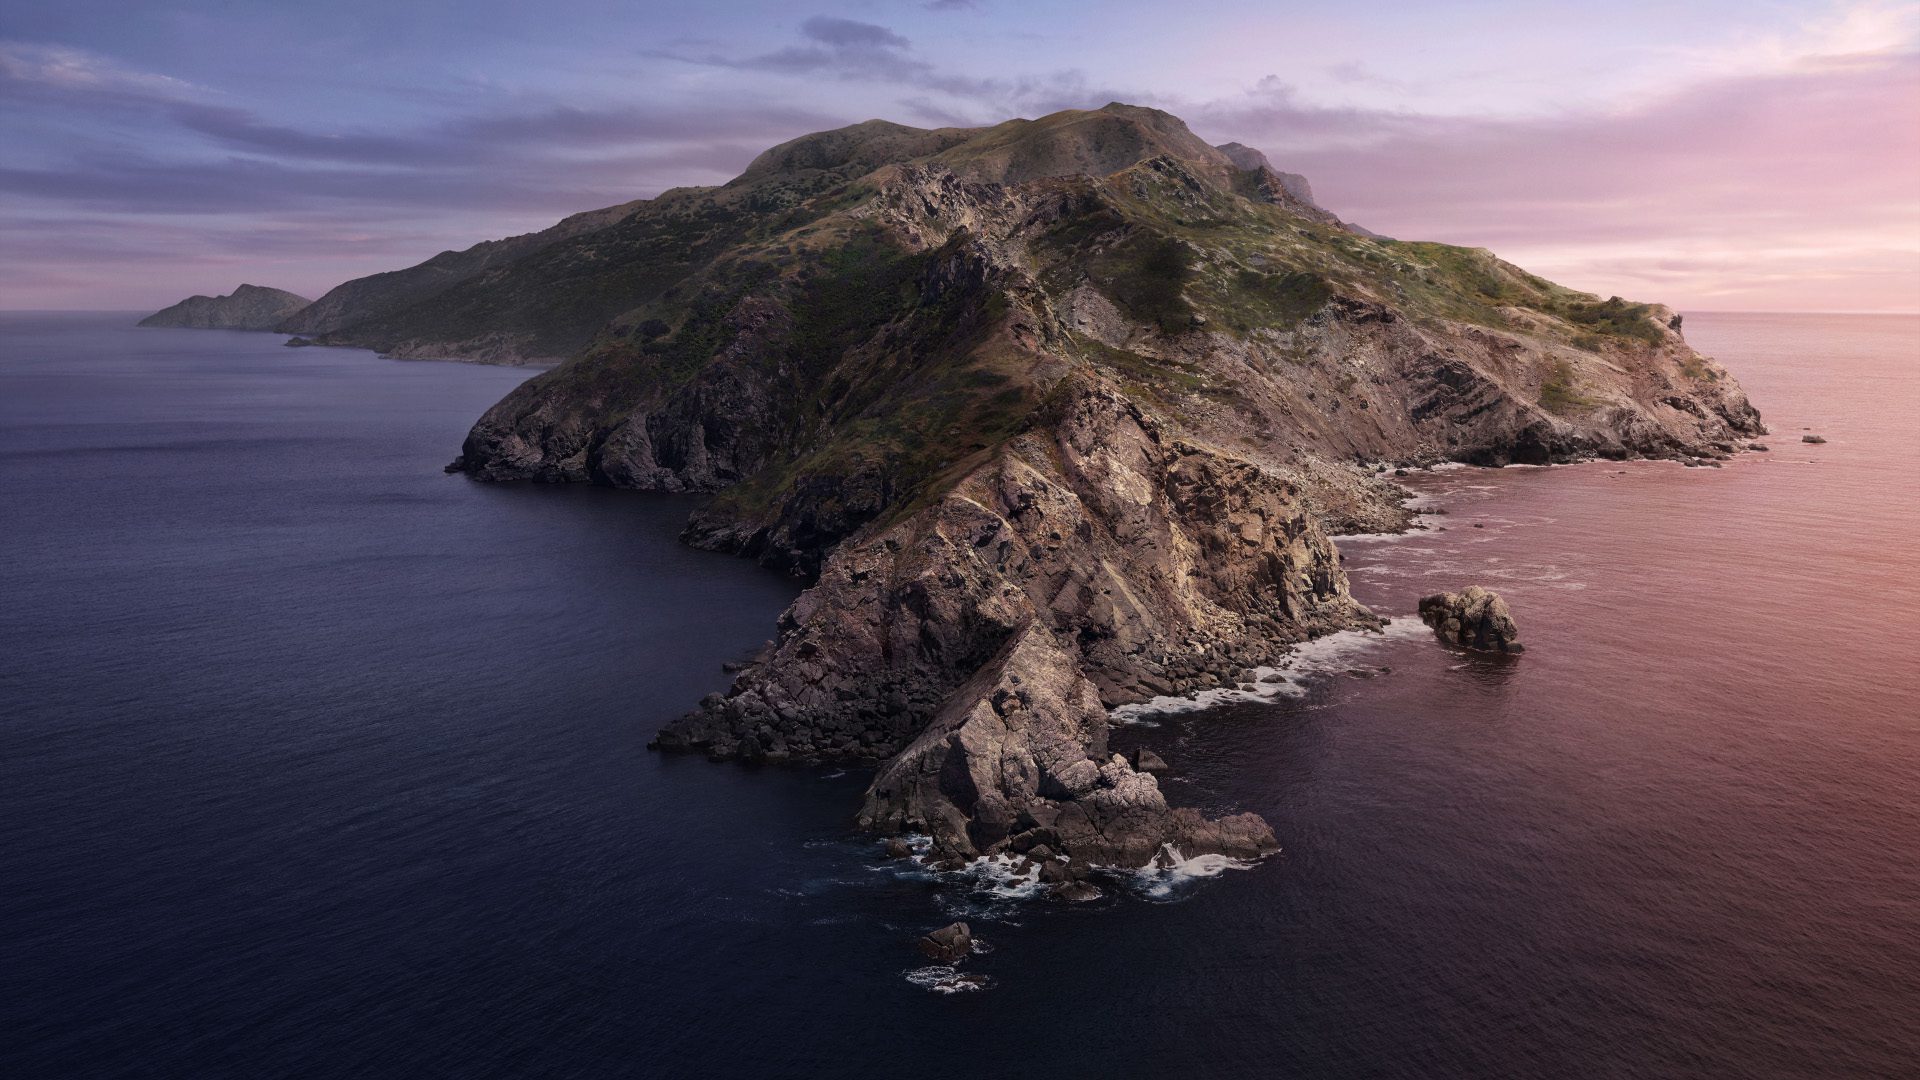 Die Insel, die man auf dem Desktophintergrund von Catalina sieht, ist der Namensgeber für das macOS.